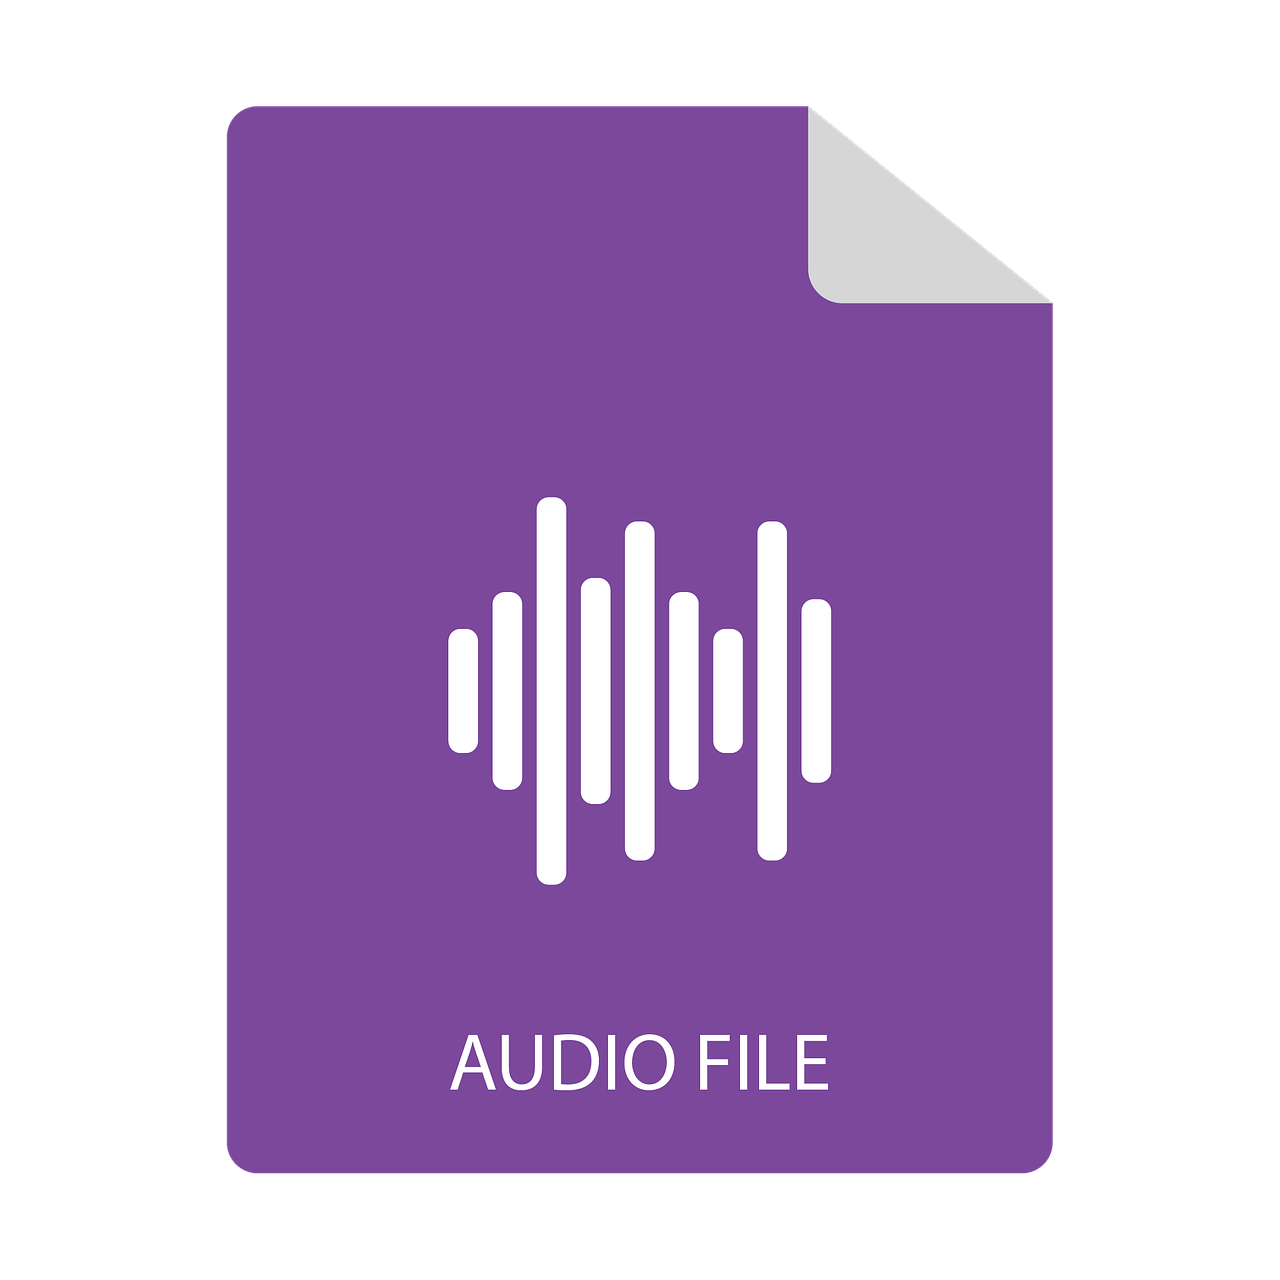 audio file icon free photo